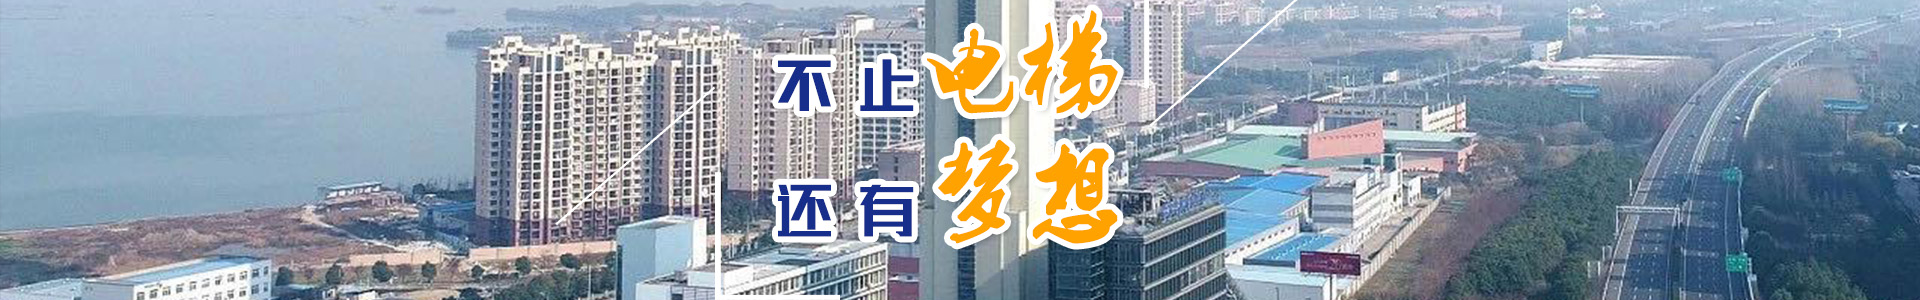 湖南力民电梯有限公司_邵阳电梯销售|邵阳电梯安装|湖南电梯维修